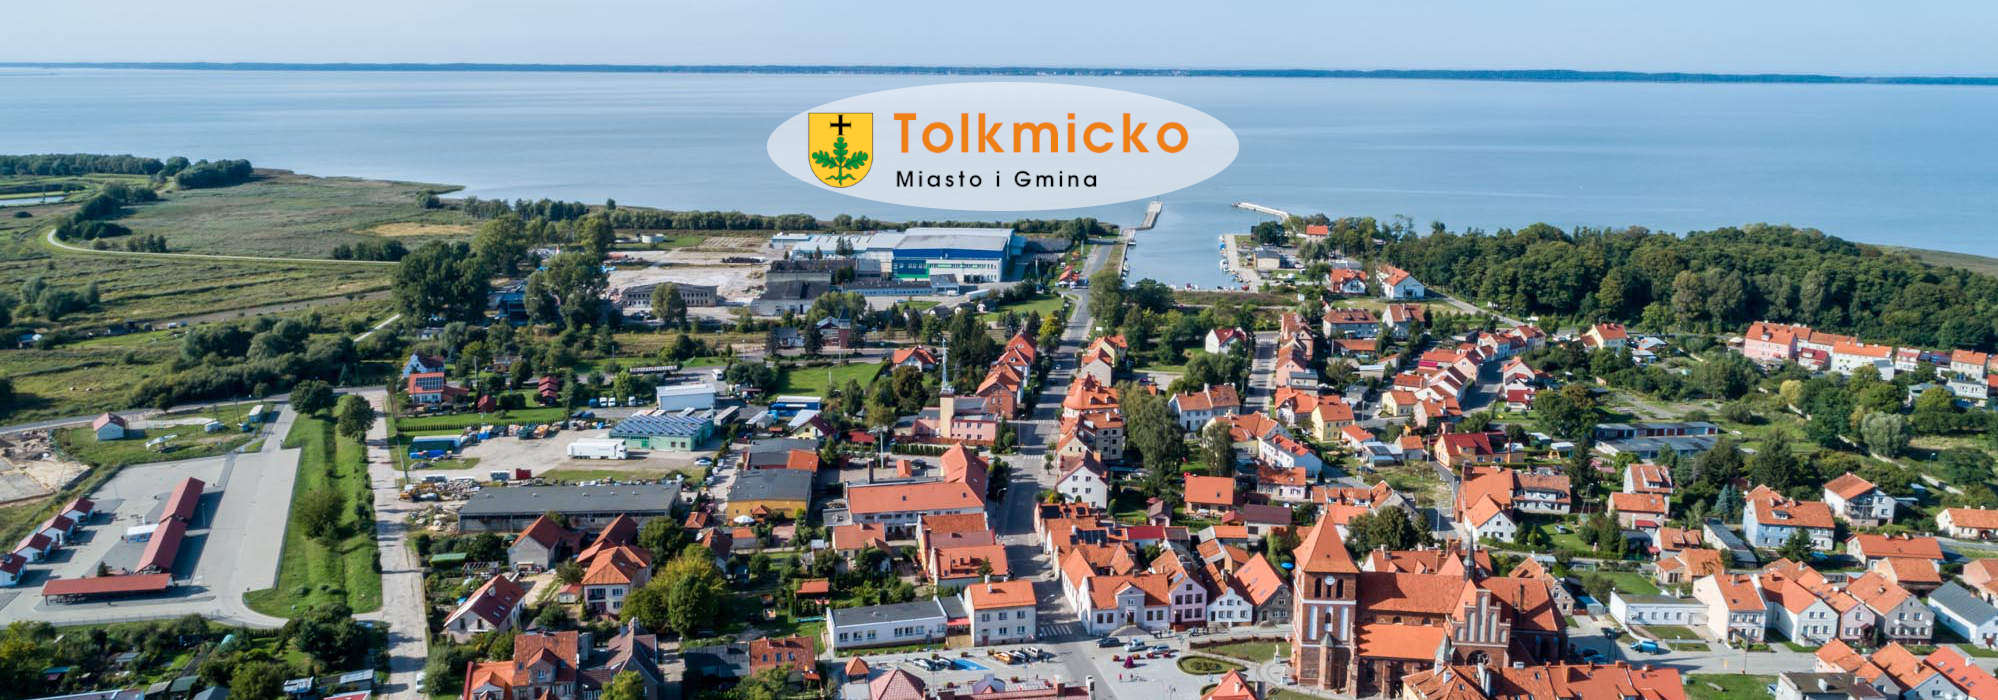 Panorama Tolkmicka z widokiem na zatokę